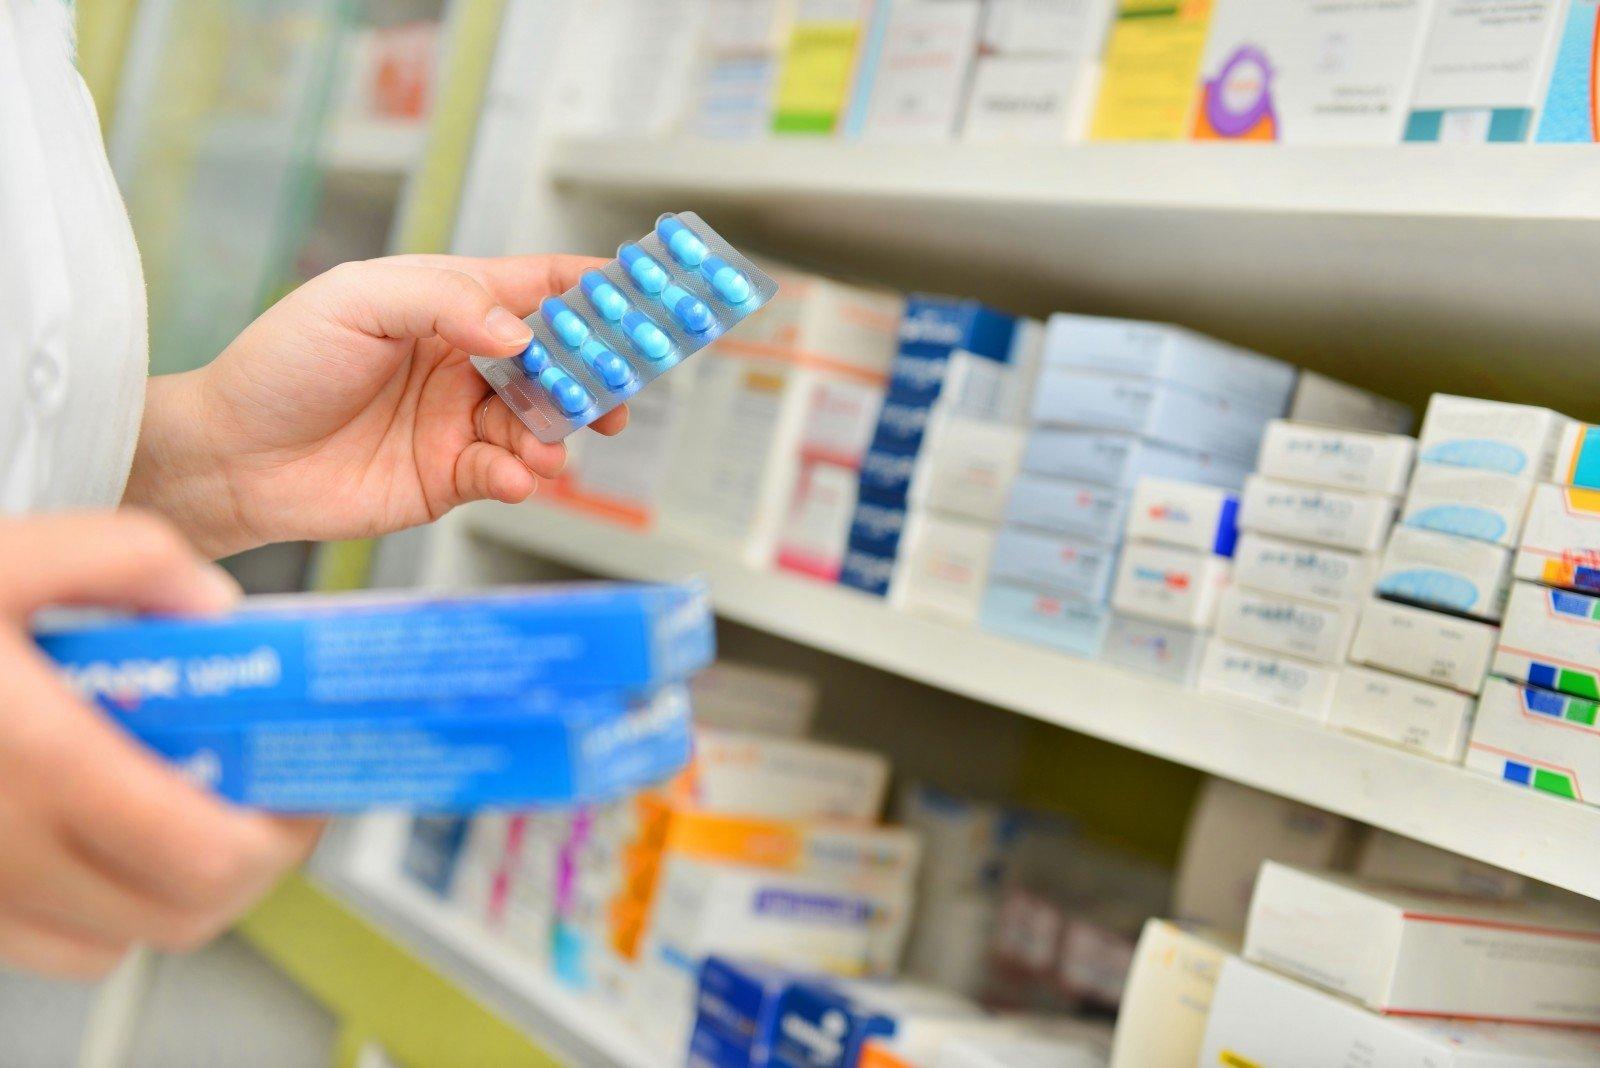 Litwini coraz częściej kupują w sklepach leki dostępne bez recepty.  Które są najpopularniejsze?